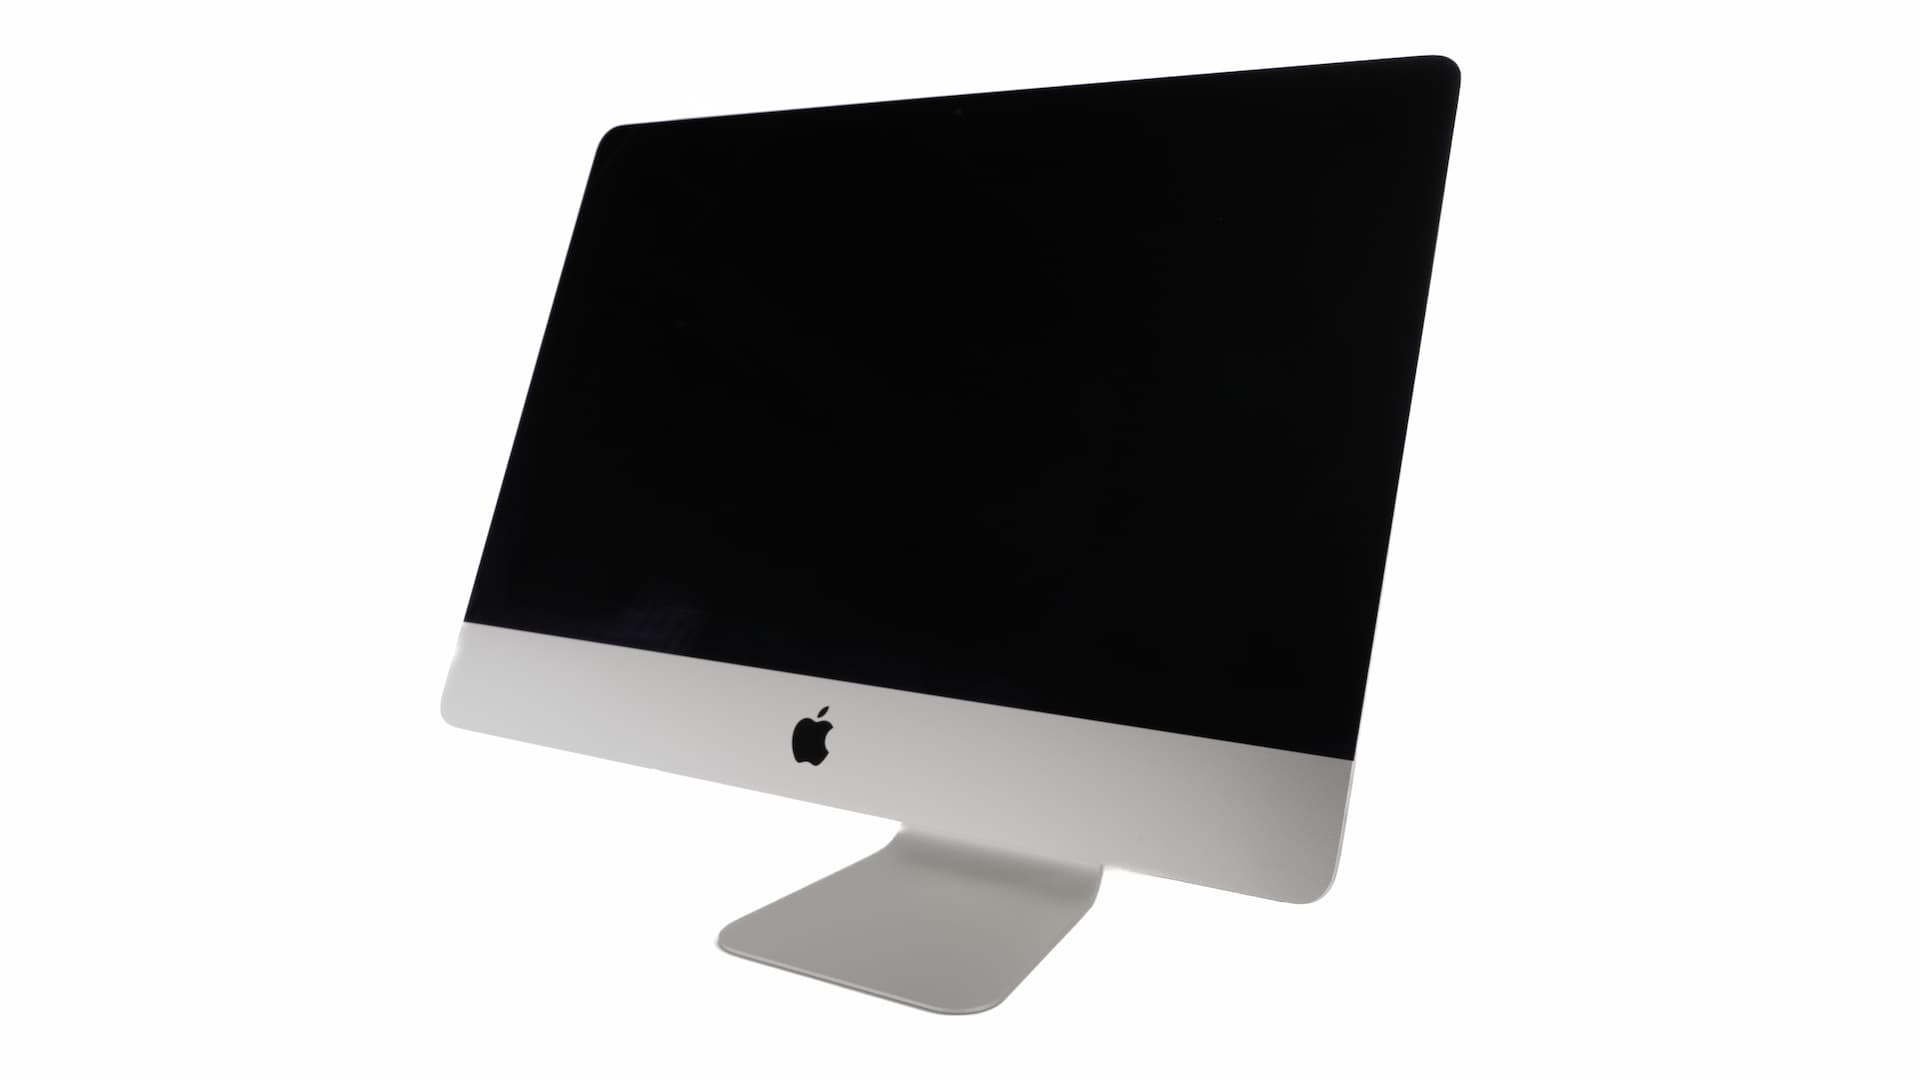 iMac-standard-1-2.jpg Brugte computere